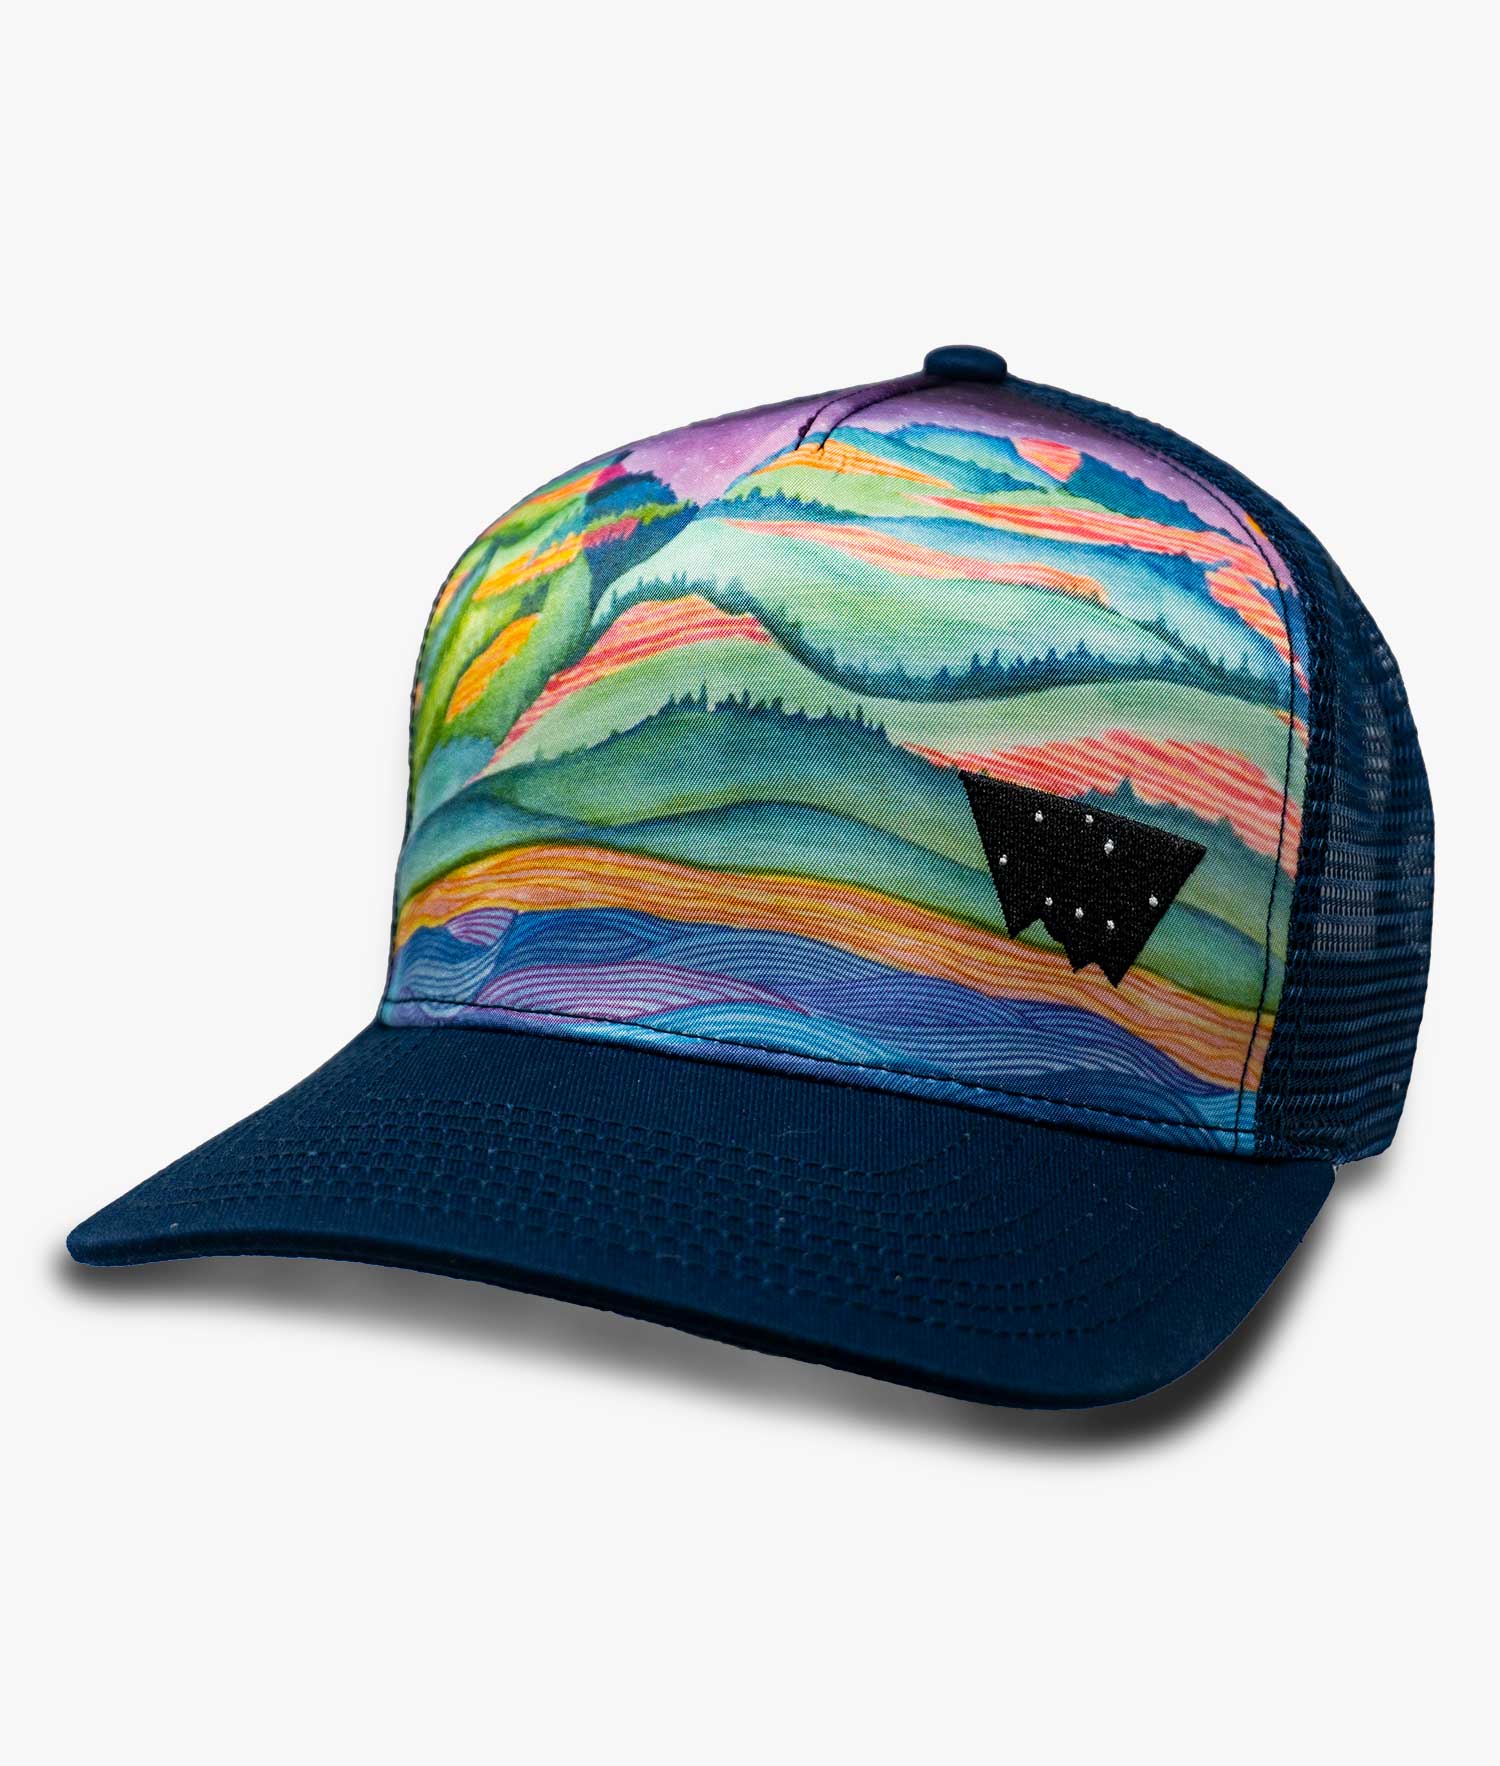 Minturn Colorado Mountain Trucker Hat - Nubian Lane Hat Co.